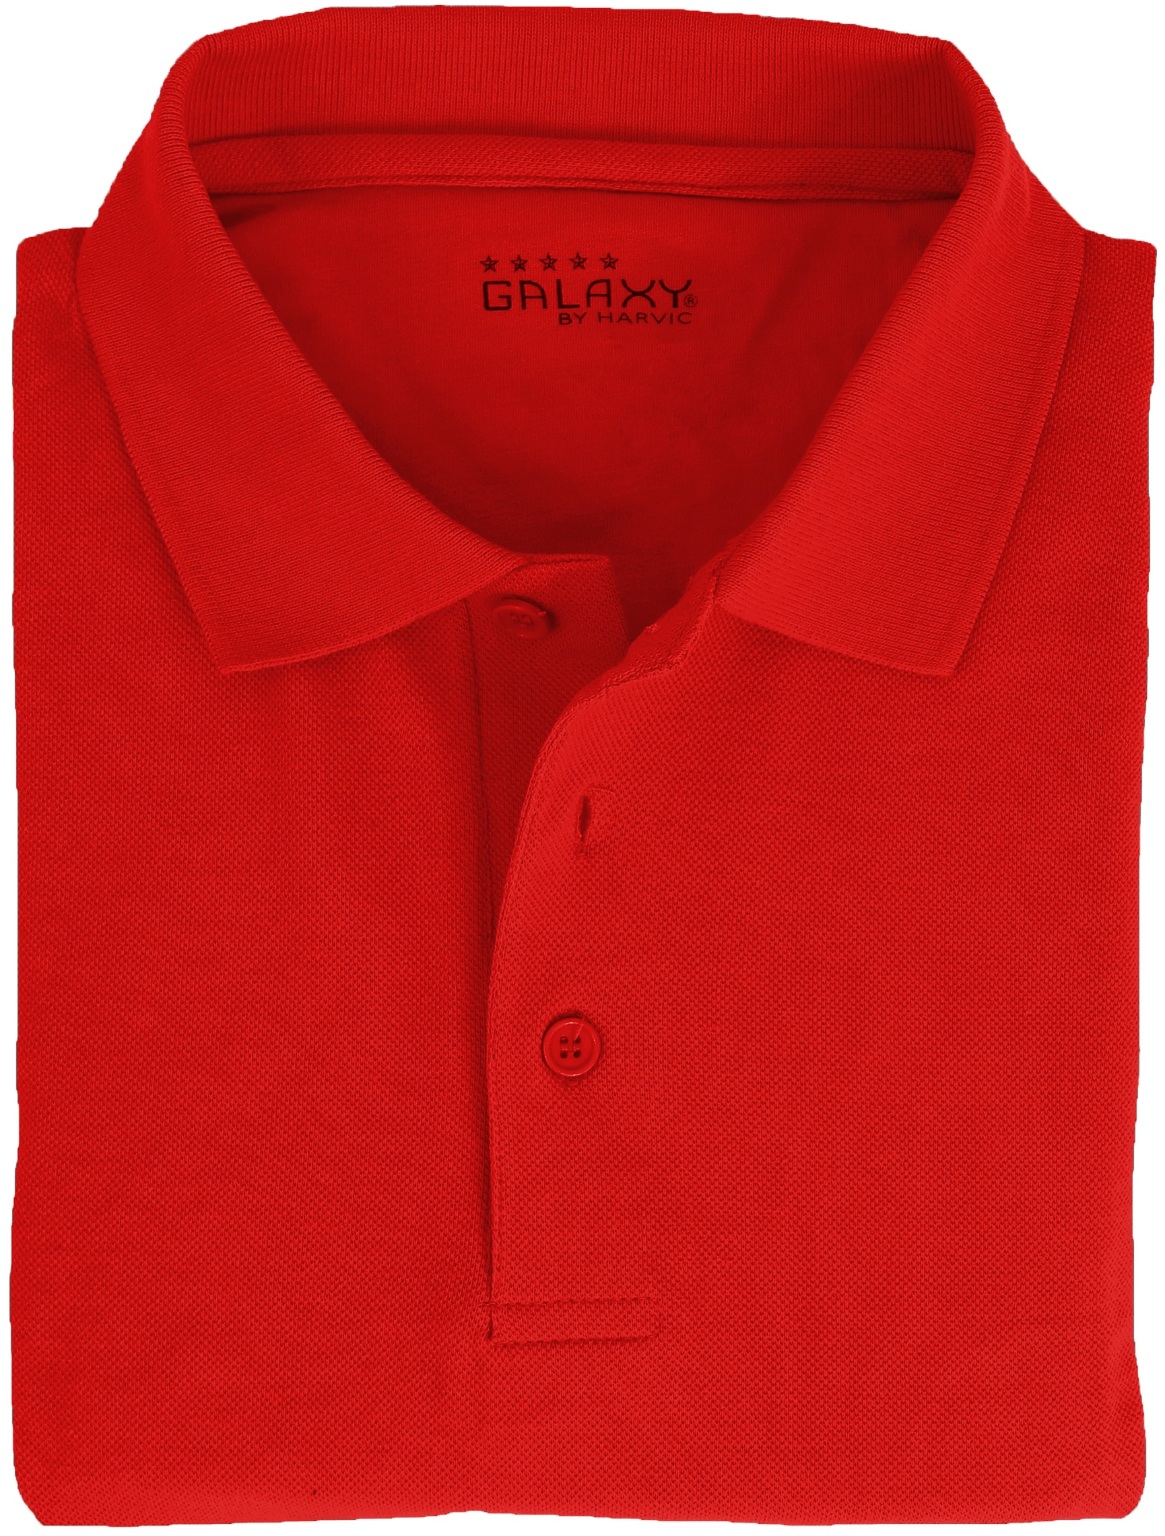 Wholesale Plus Size Short Uniform Shirt - Red, 3X-6X